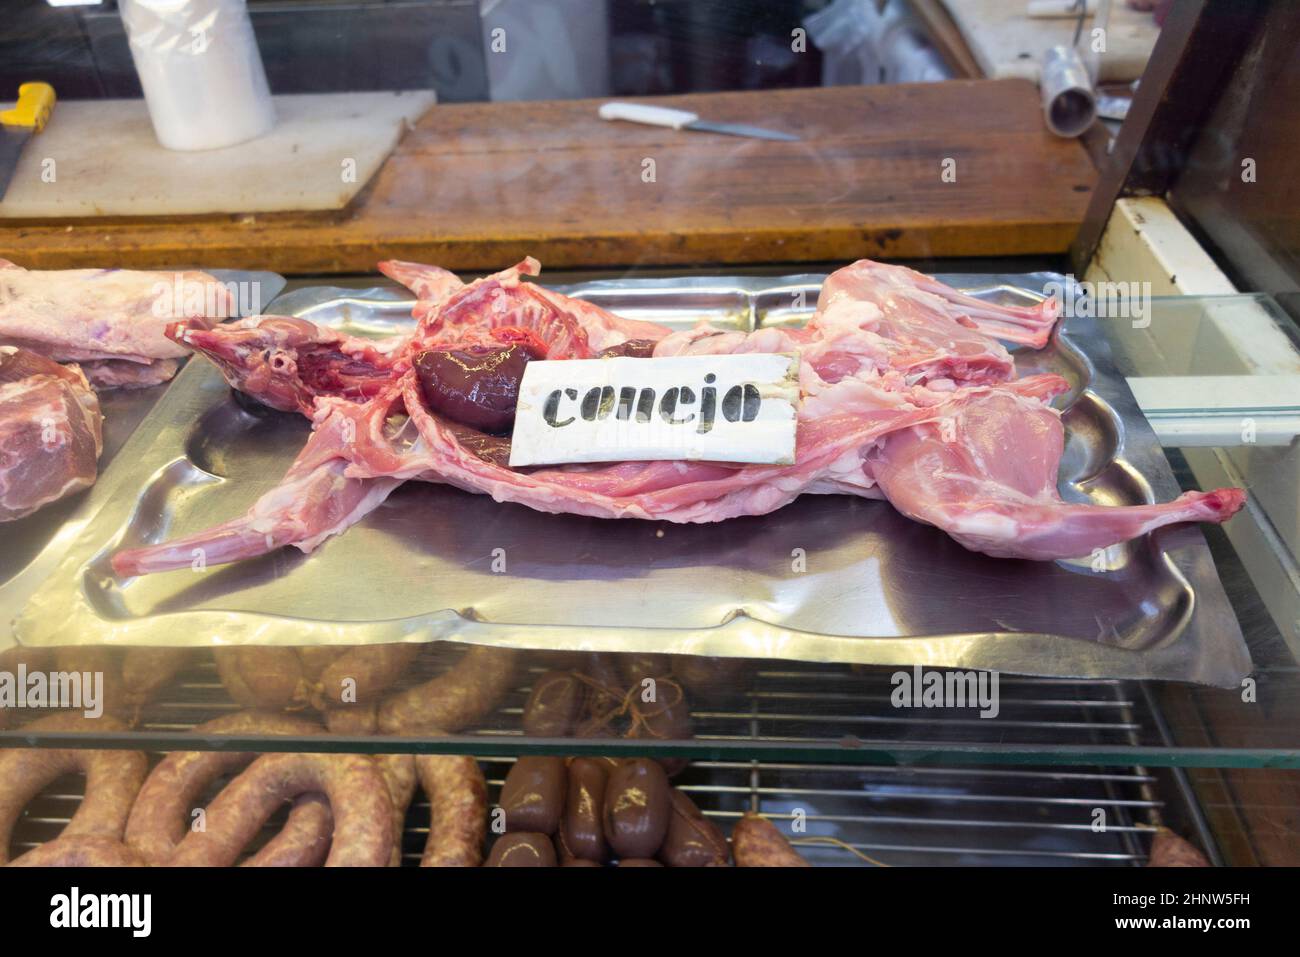 Conejo en un carniceros ahop mith la palabra española para conejo, Conejo, Argentina Foto de stock